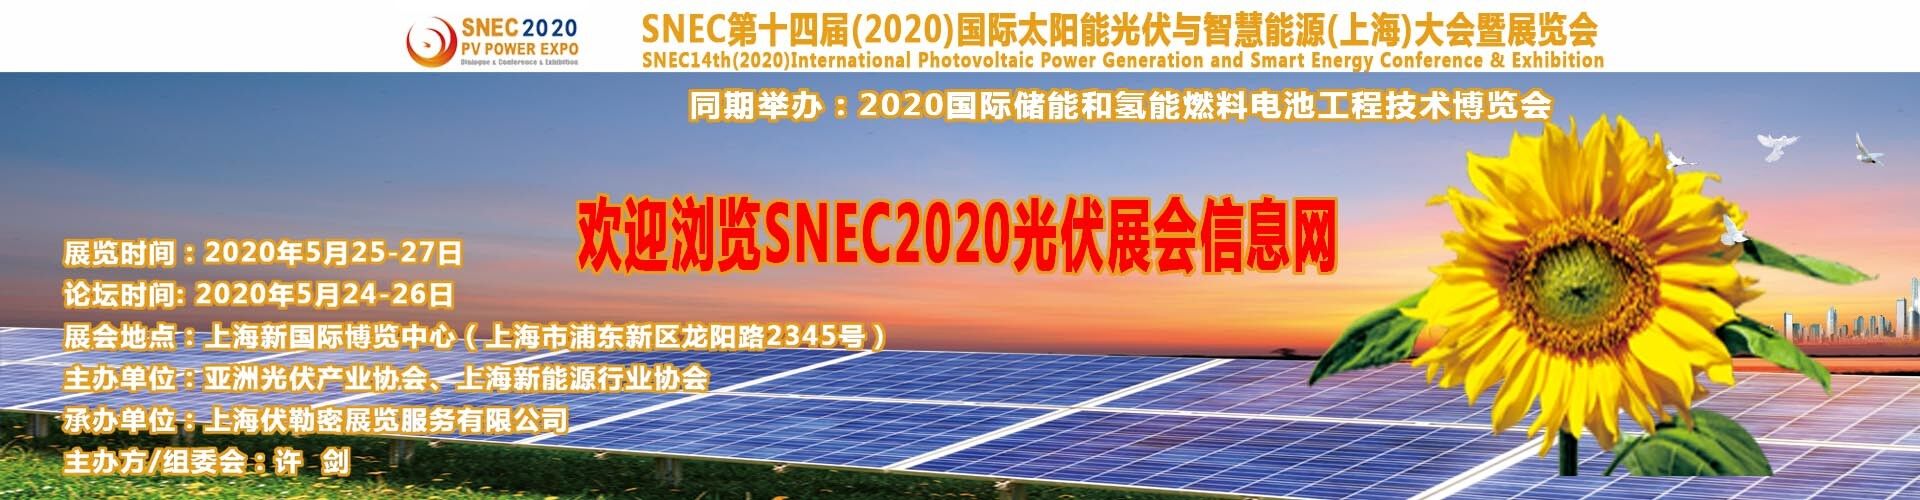 2018年5月上海國際太陽能展覽會